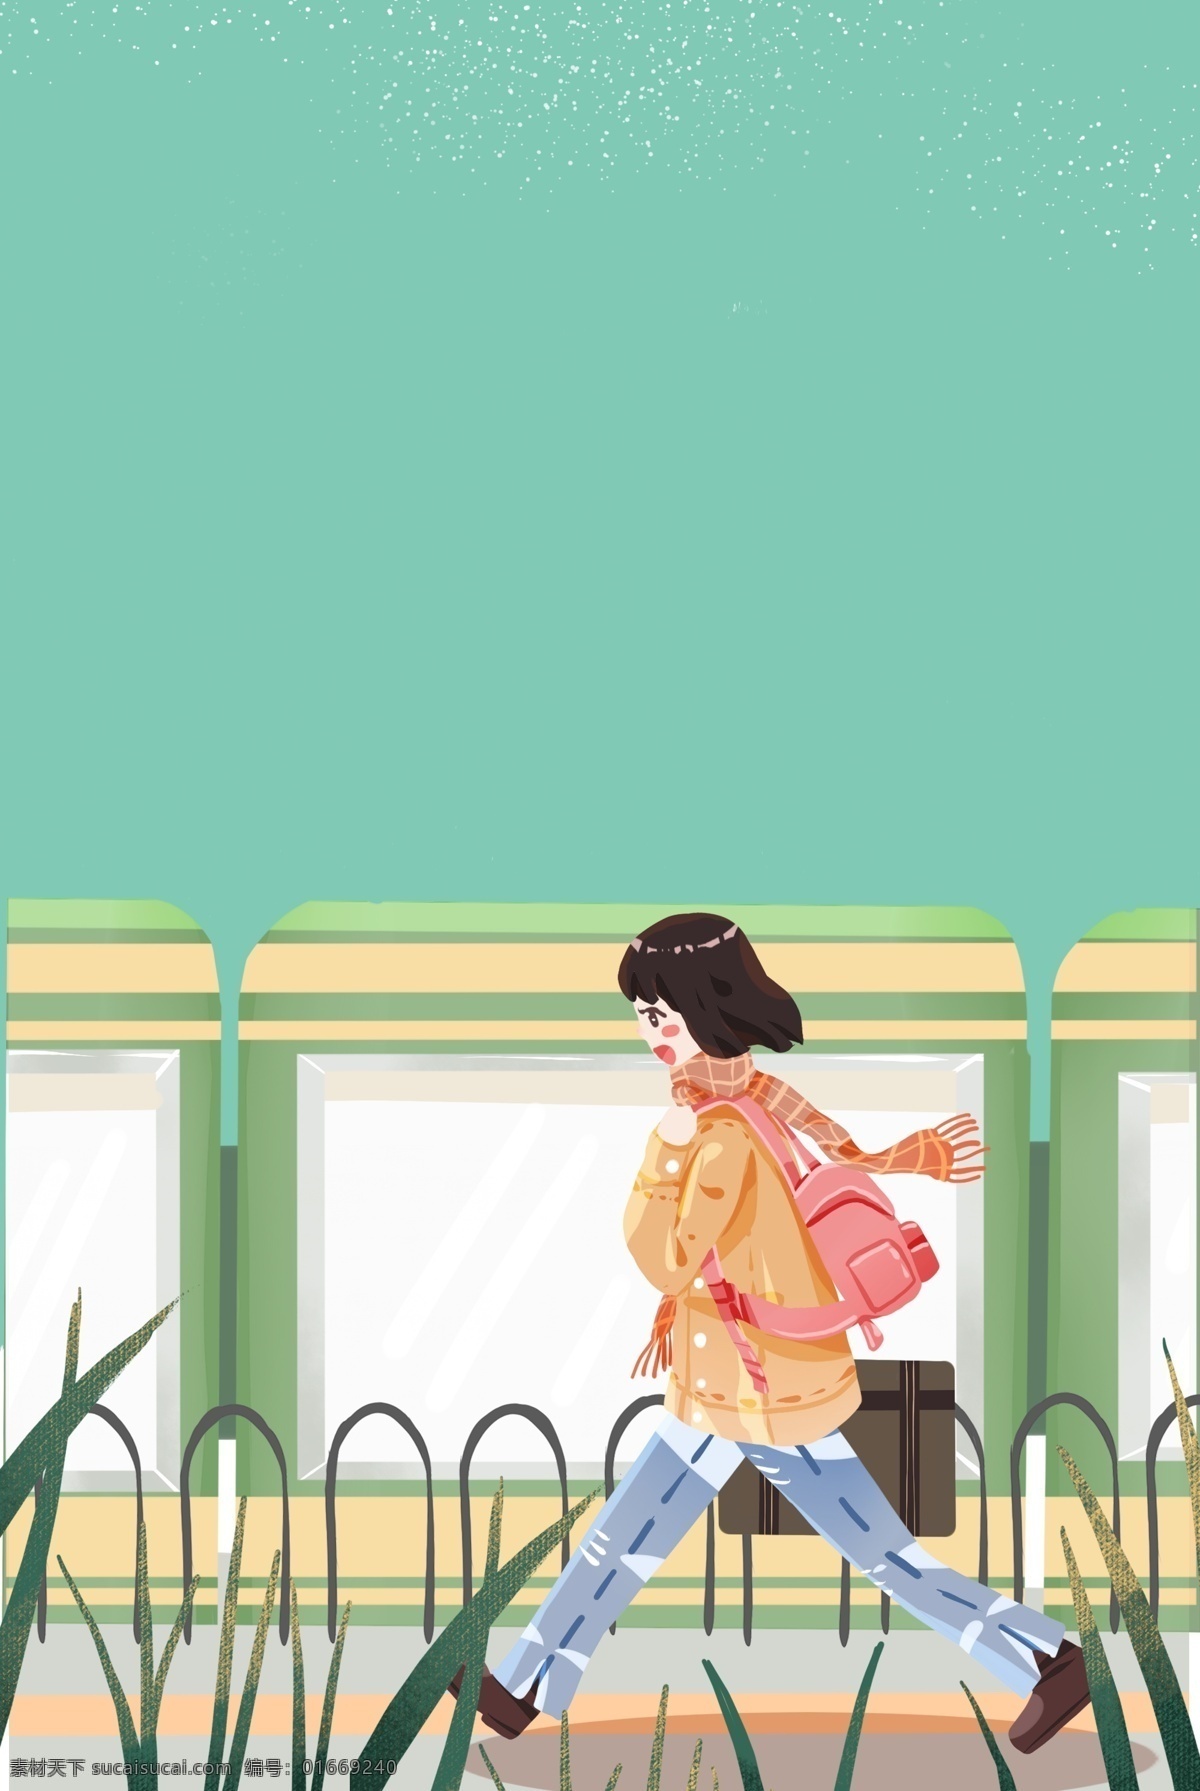 春运 火车站 回家 女孩 插画 海报 新年 思念 人物 交通 插画风 促销海报